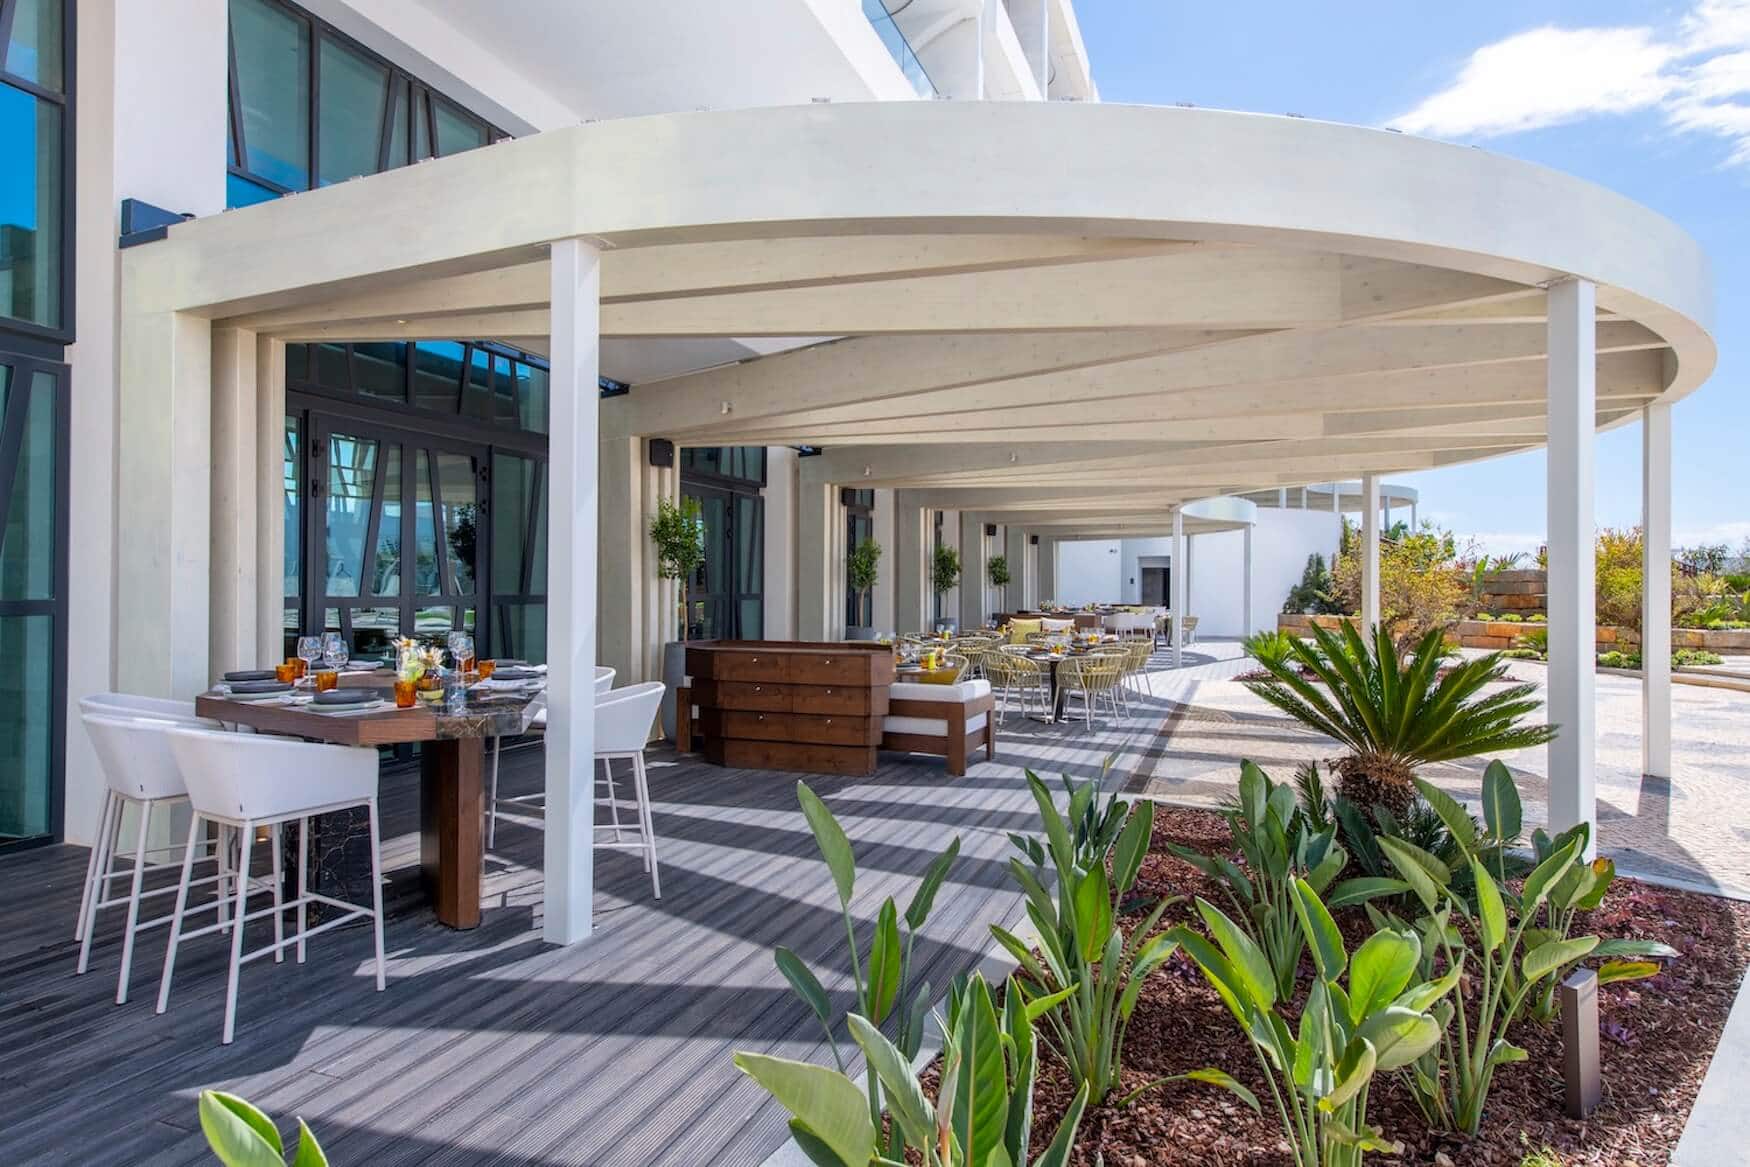 Willkommen im neuen W Hotel an der Algarve!